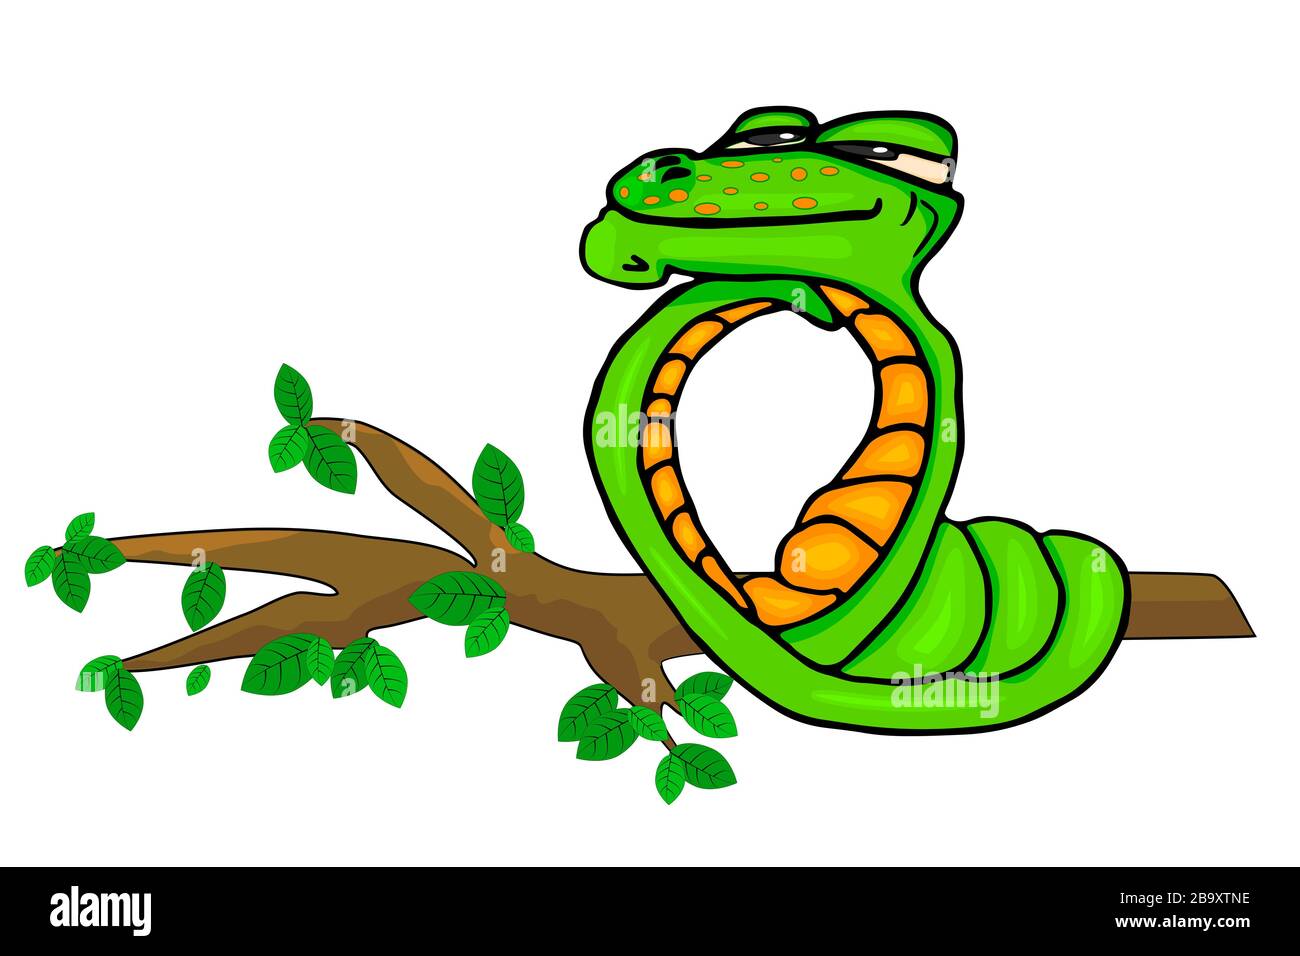 Serpent vert isolé sur fond blanc. Un serpent drôle qui a l'air rêveux sur une branche d'arbre. Personnage de dessin animé animal mascotte de serpent Viper. Vecteur de stock Illustration de Vecteur